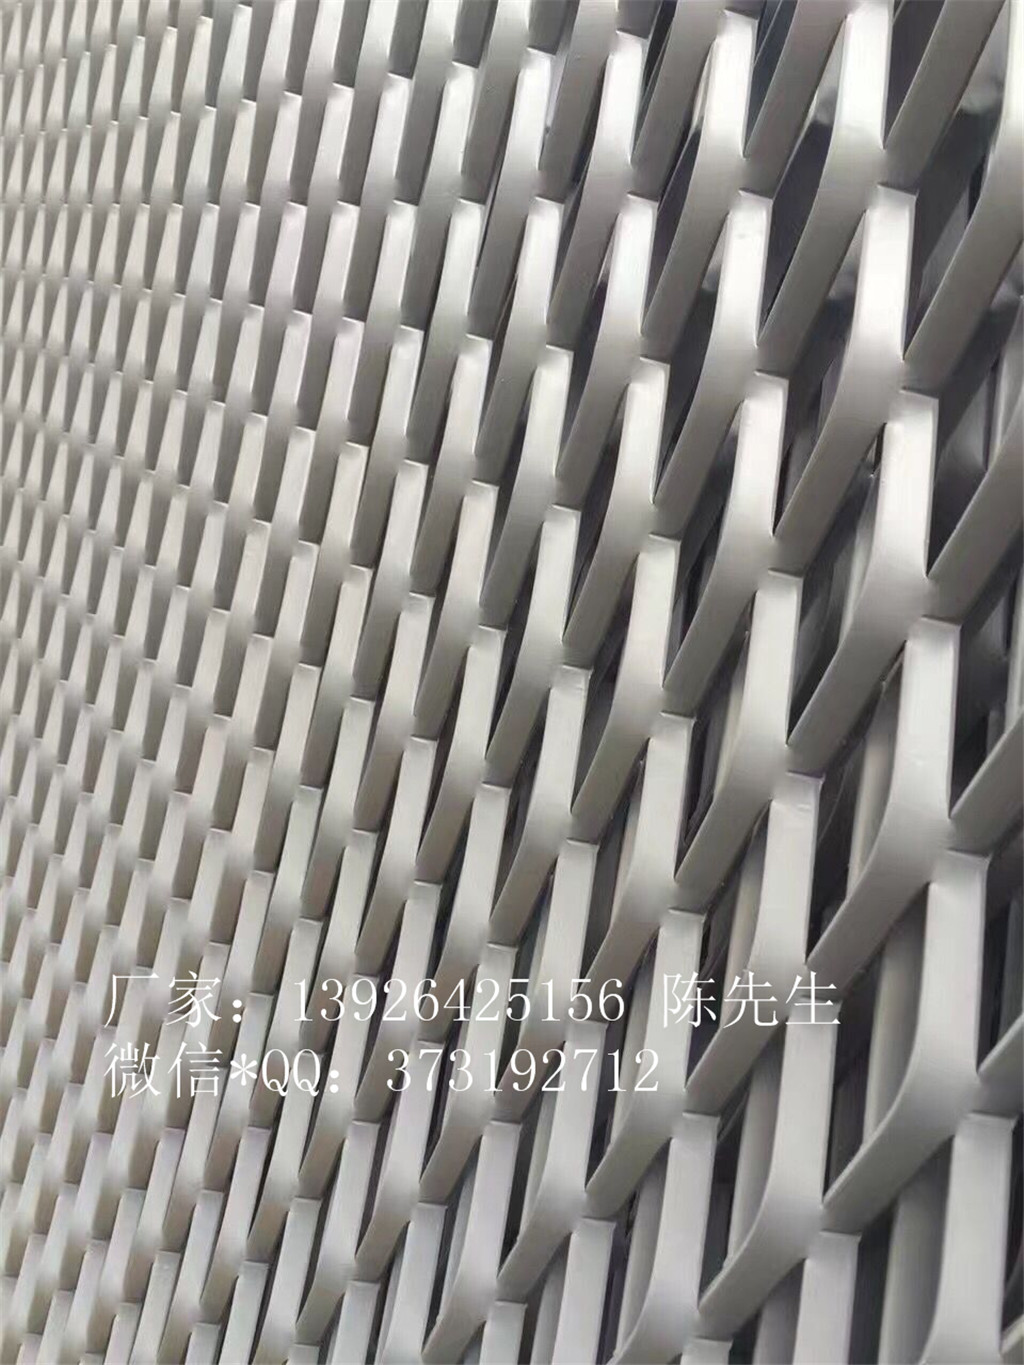 广州市菱形网孔板 铝材网板厂家